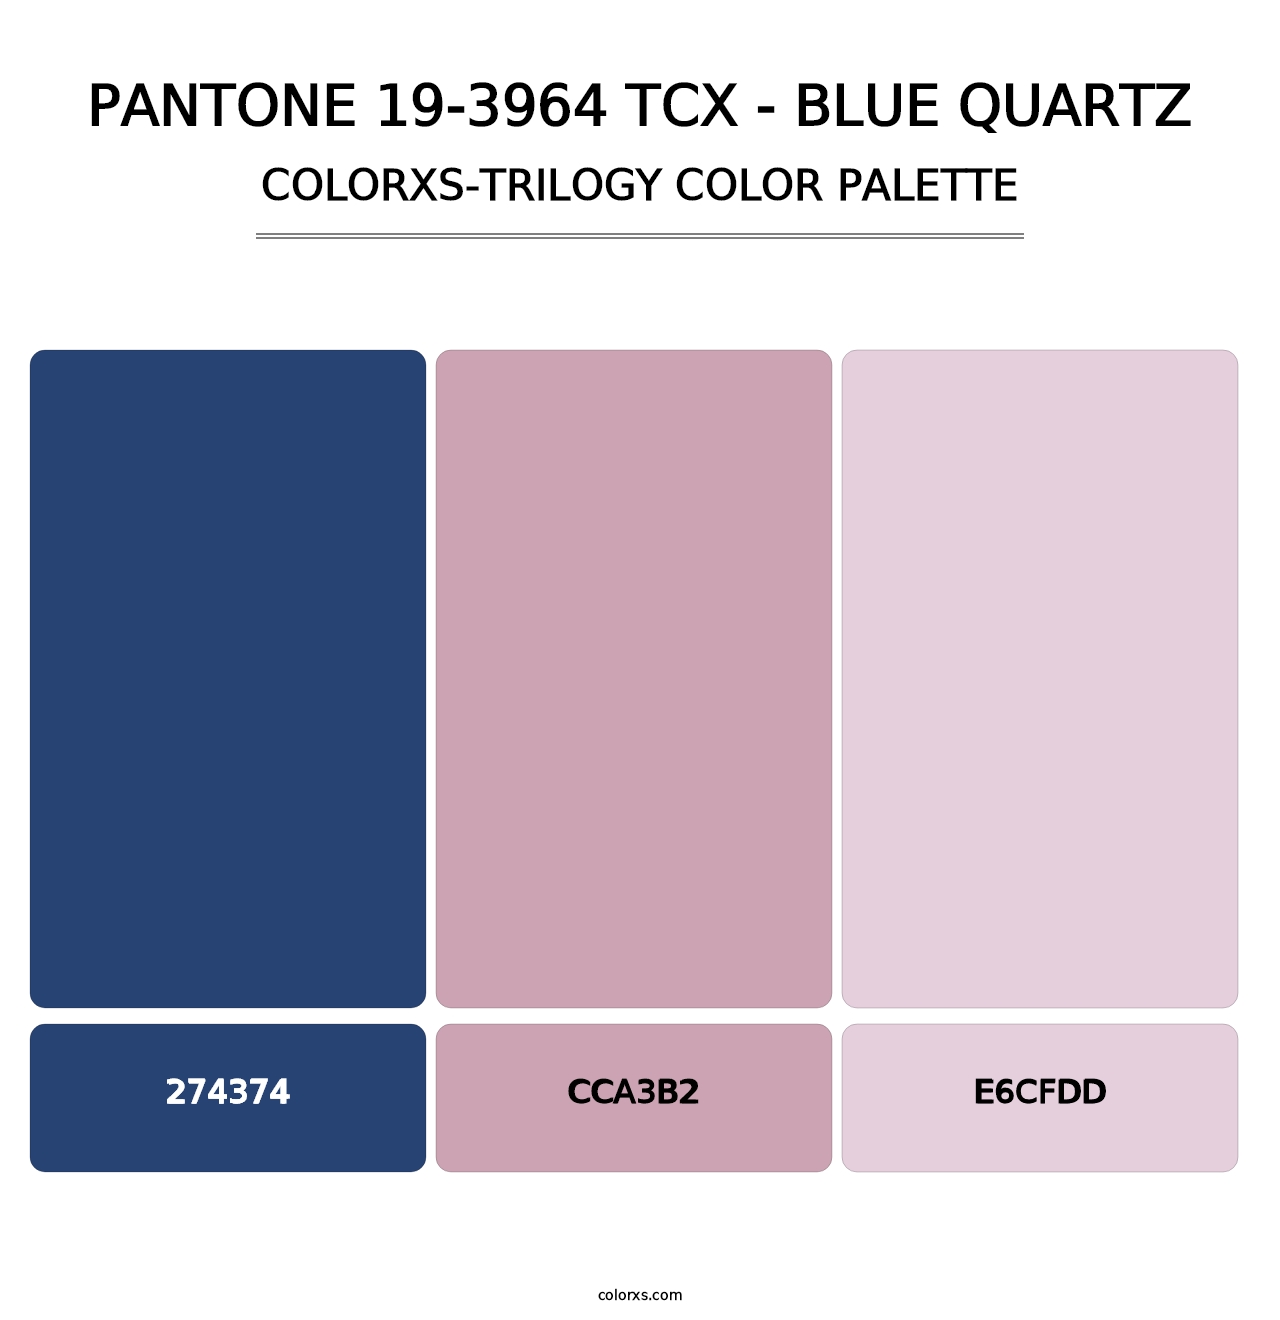 PANTONE 19-3964 TCX - Blue Quartz - Colorxs Trilogy Palette